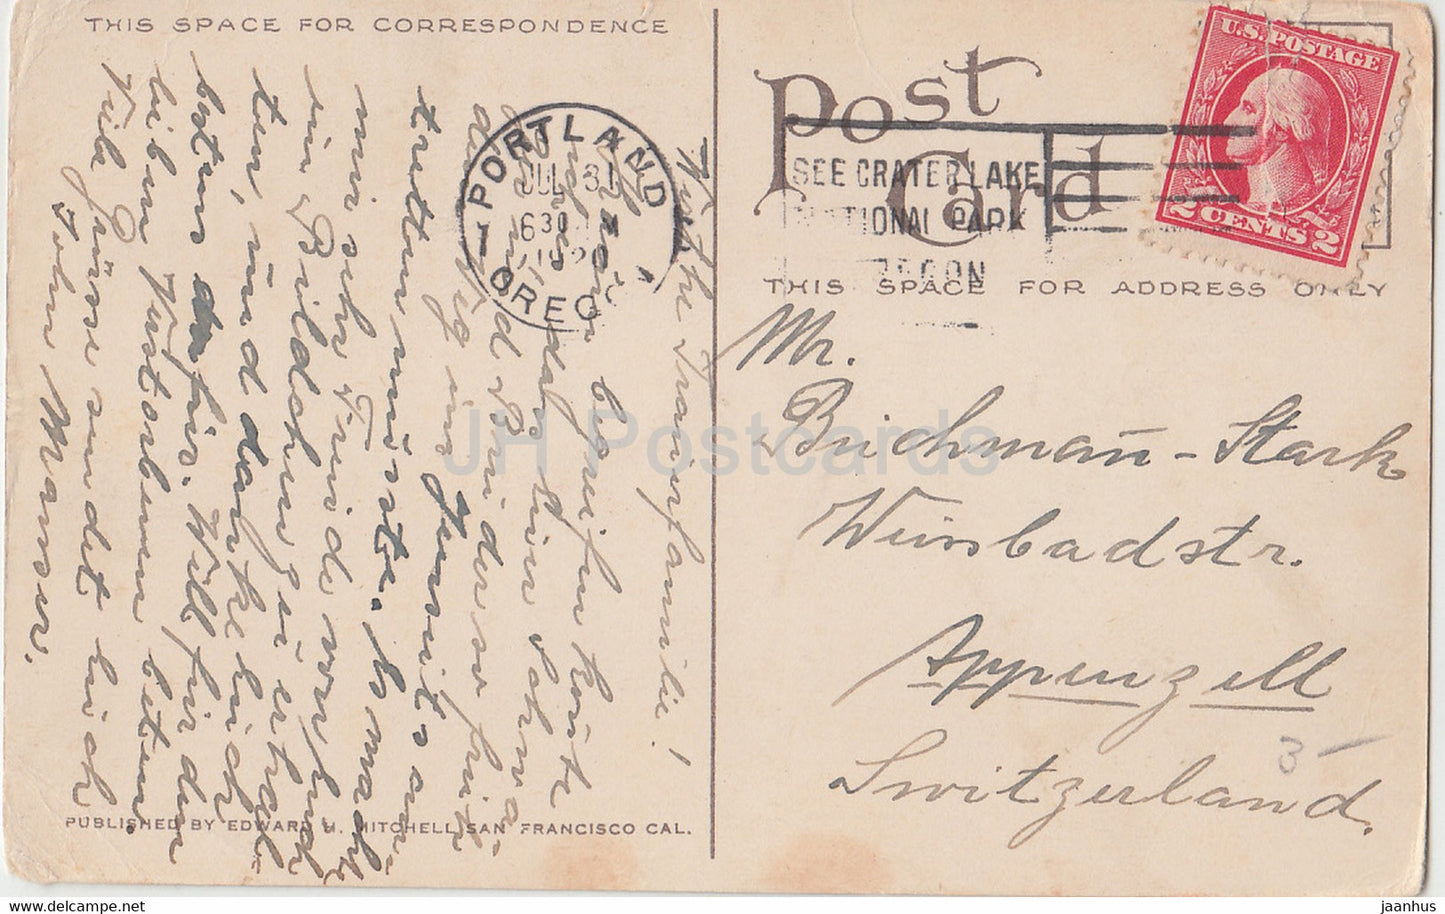 Portland - Arrivée de la statue de l'homme blanc à Plaza Park - Oregon - 1034 - carte postale ancienne - 1920 - États-Unis - utilisé